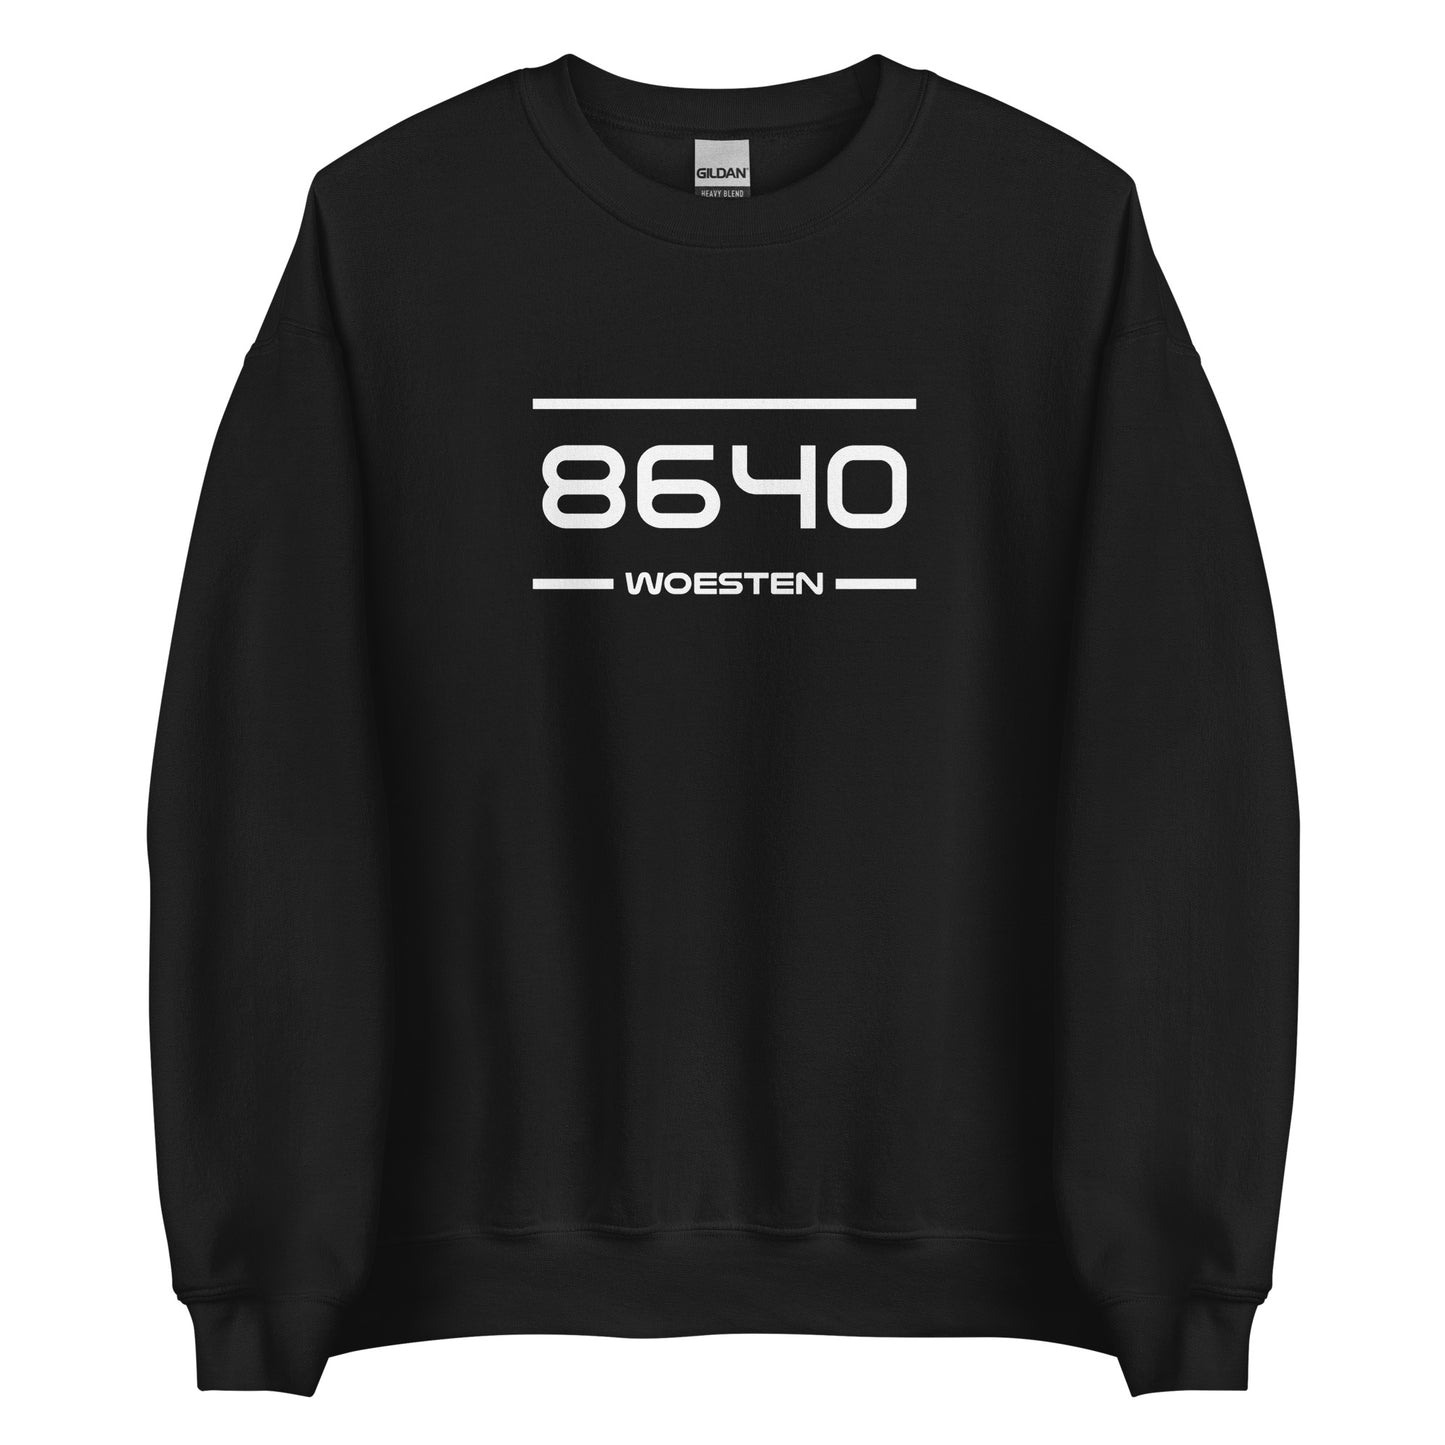 Sweater - 8640 - Woesten (M/V)